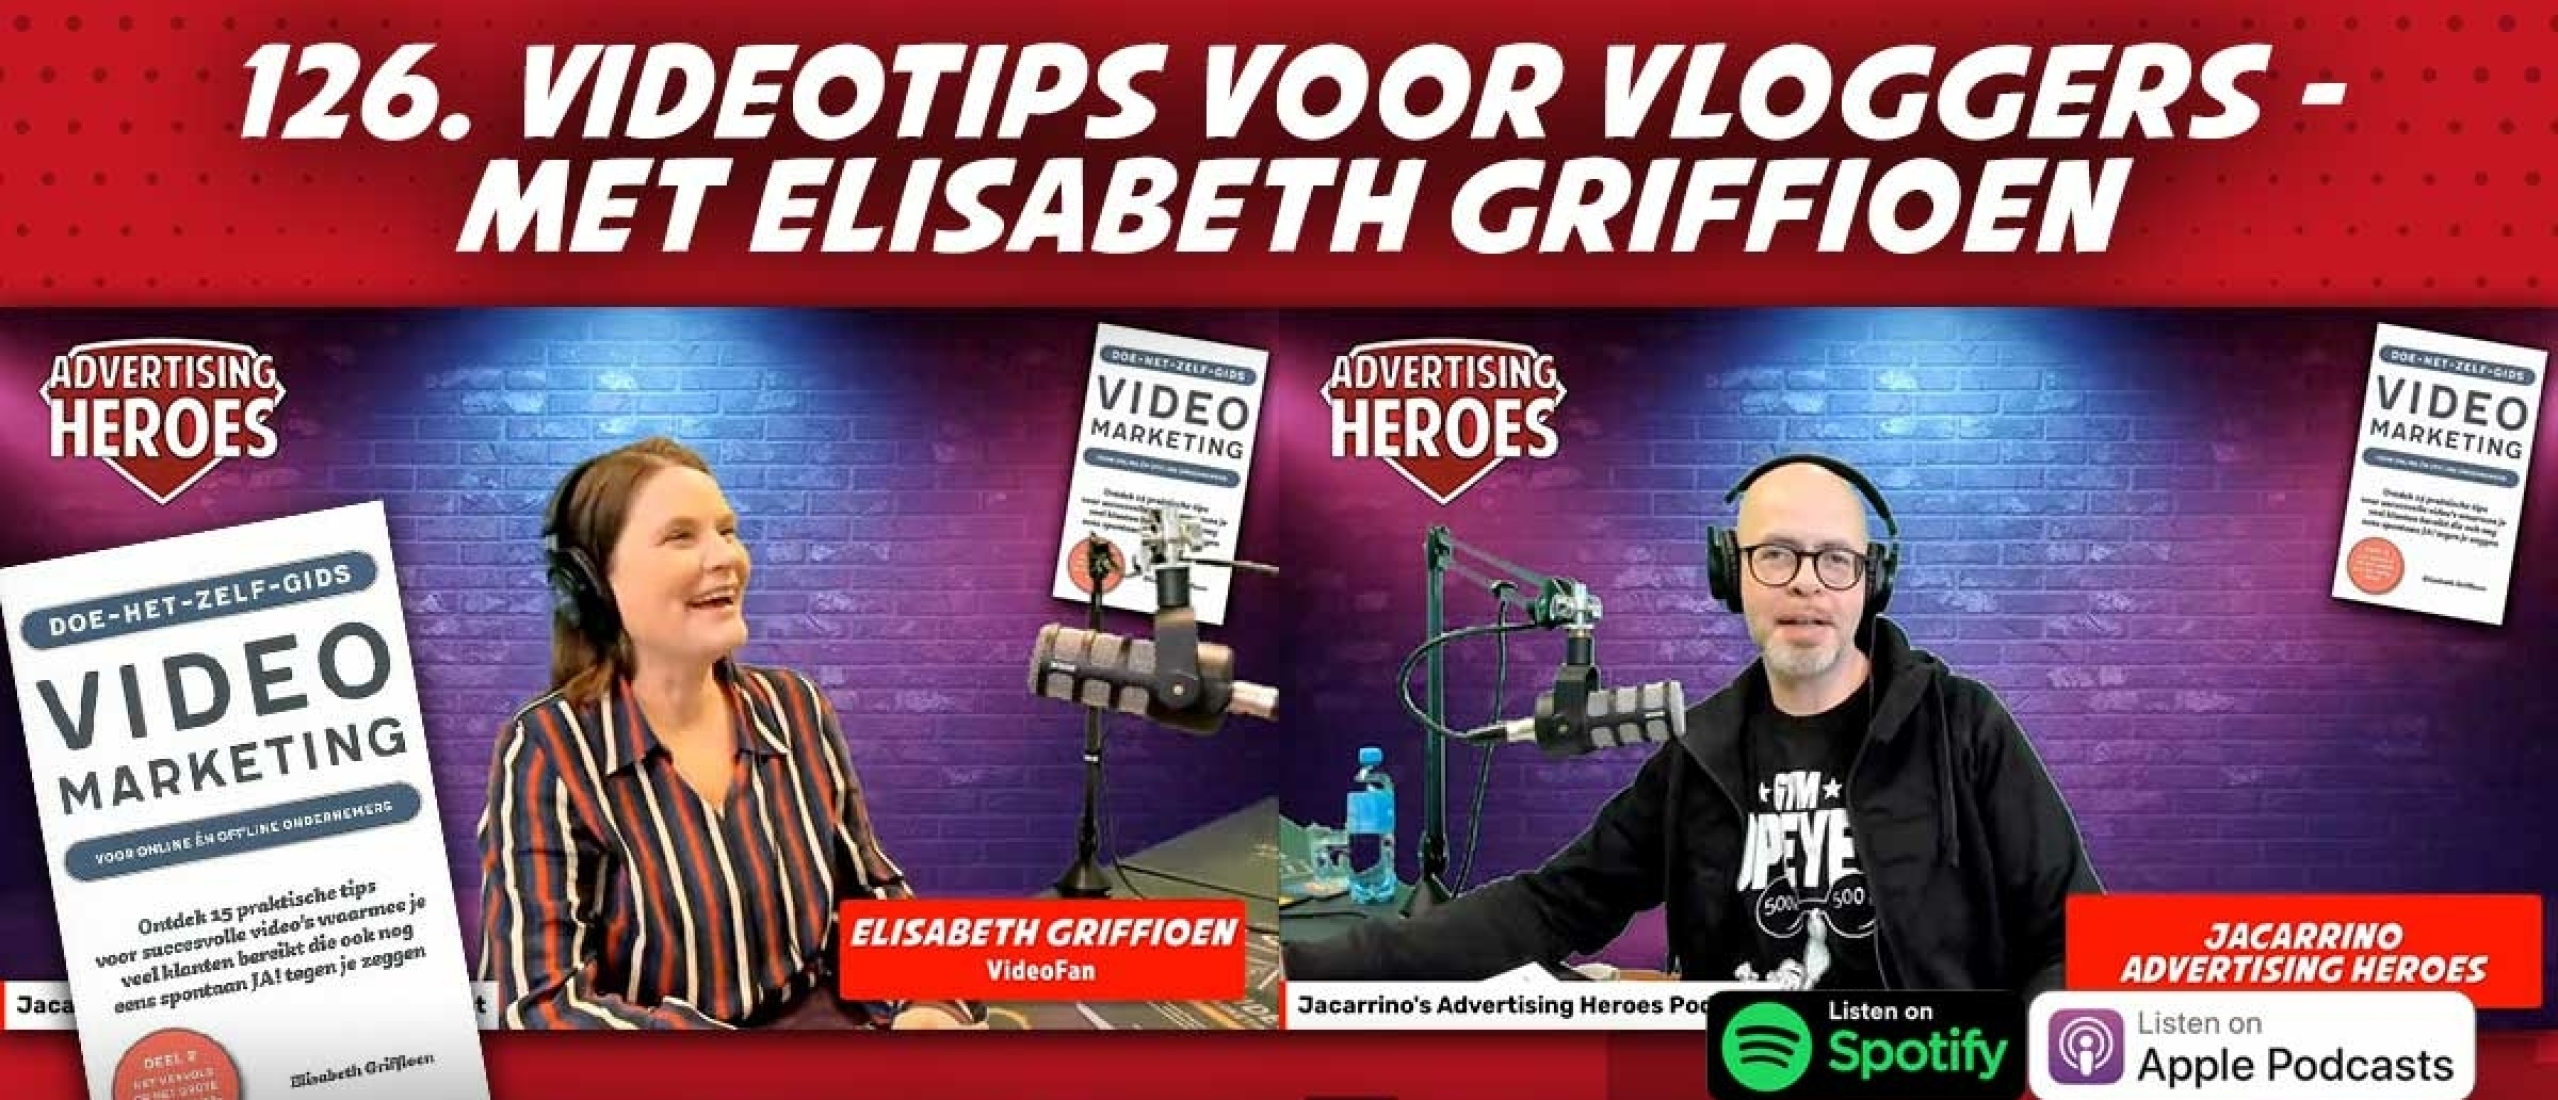 Videotips voor Vloggers! - met Elisabeth Griffioen